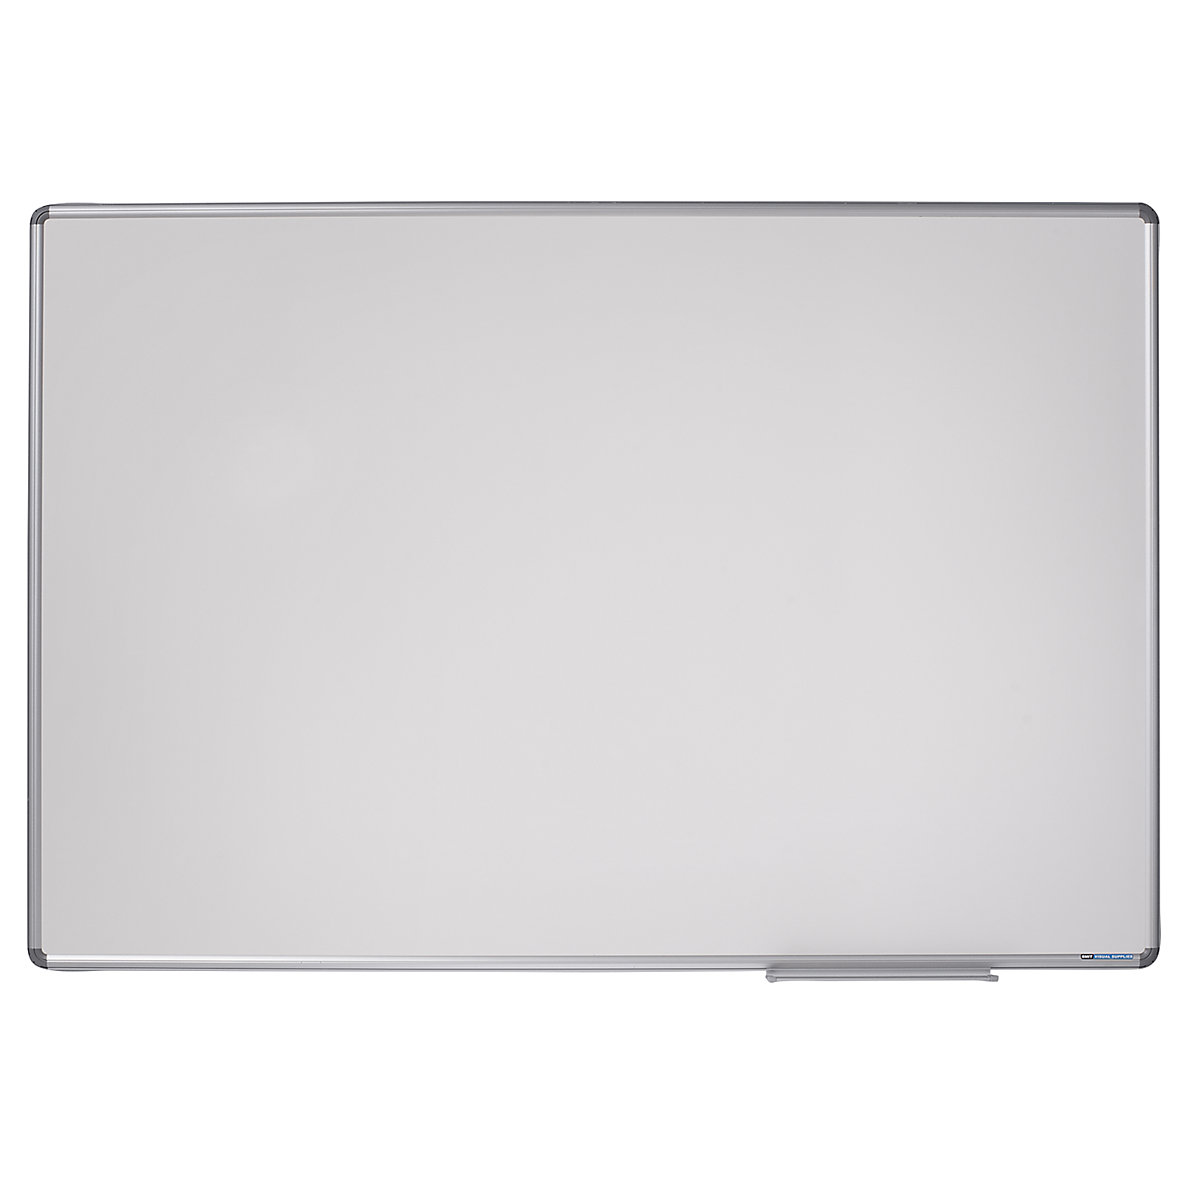 Designerska tablica ścienna – eurokraft pro, blacha stalowa, emaliowana, szer. x wys. 900 x 600 mm-10